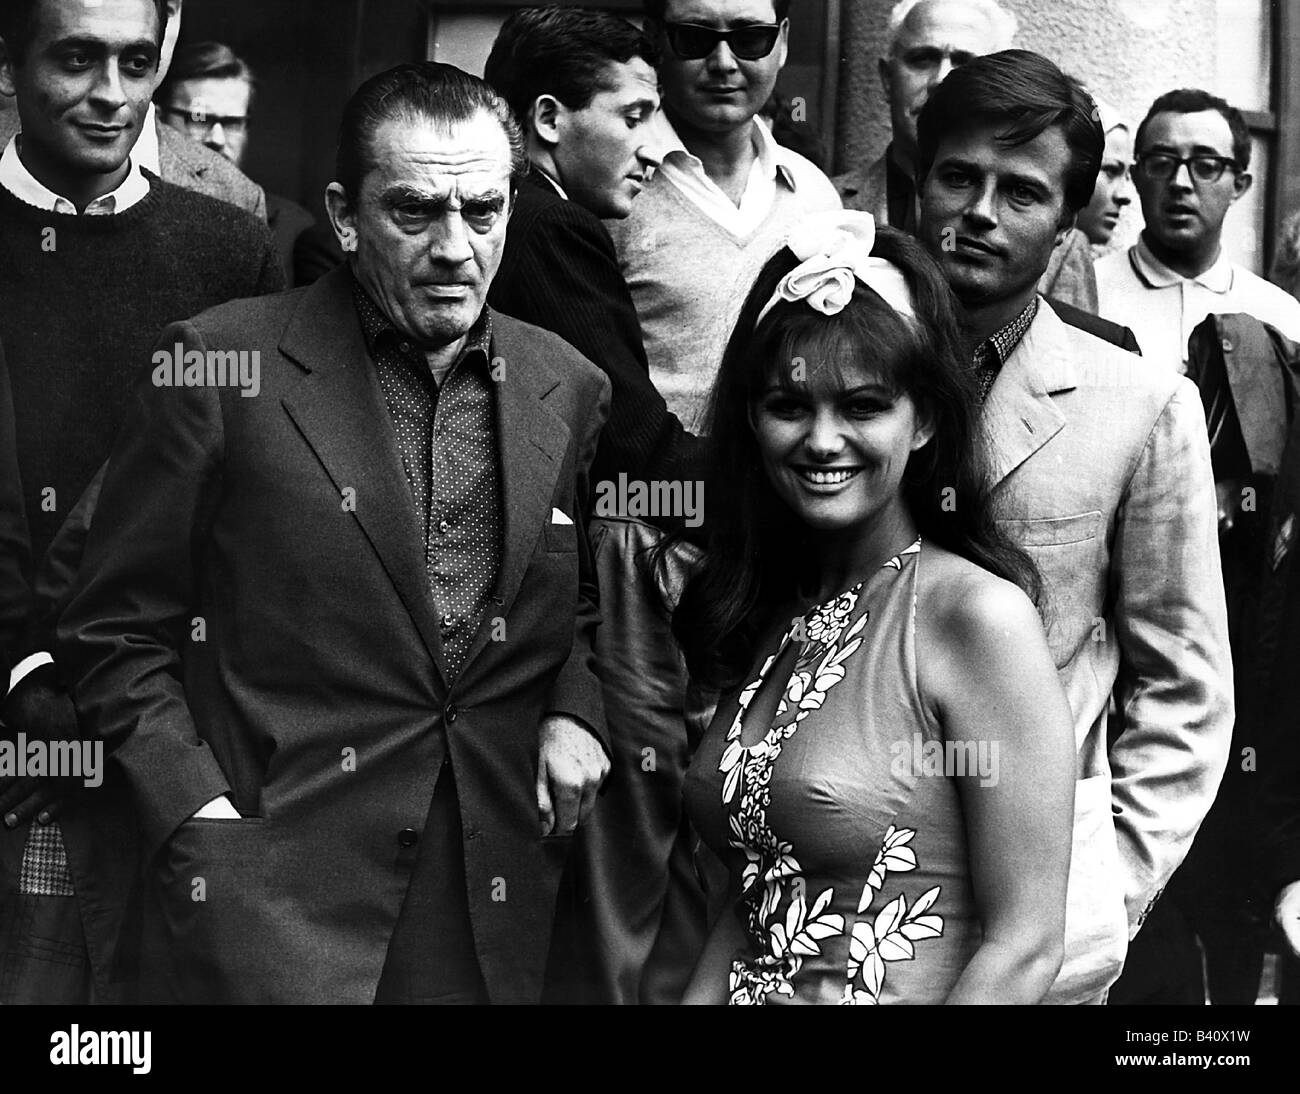 Cardinale, Claudia,  * 15.4.1938, Italian Actress, with Luchino Visconti, Jean Sorel, Venice, Italy, 1965, , Stock Photo